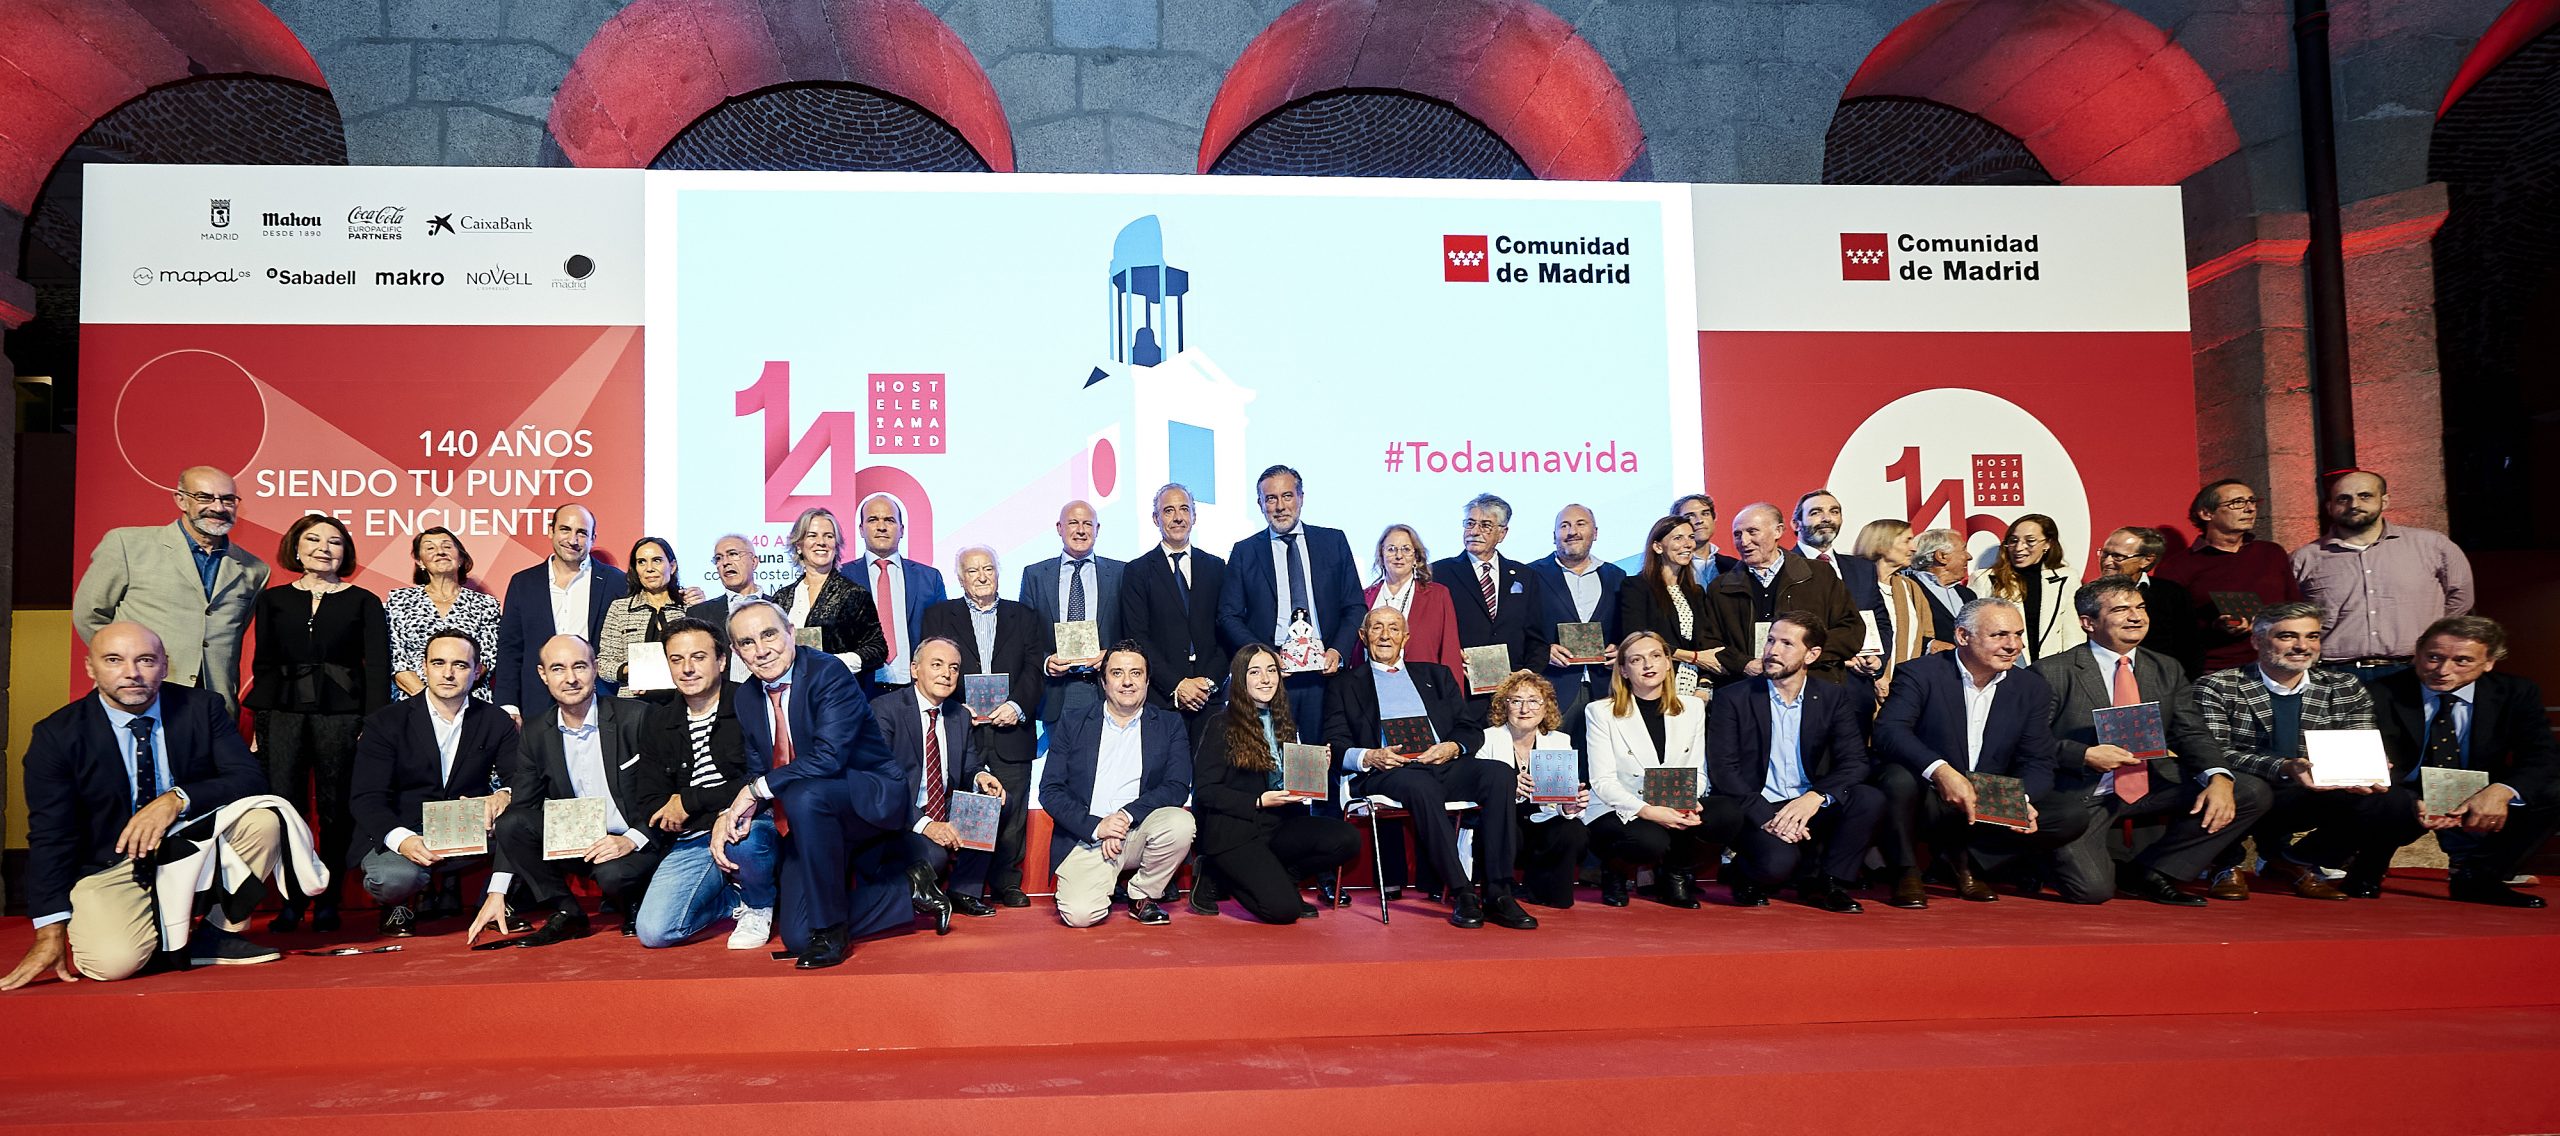 Hostelería Madrid premia a Isabel Díaz Ayuso por su apoyo a la hostelería de la región durante su mandato - Hostelería Madrid